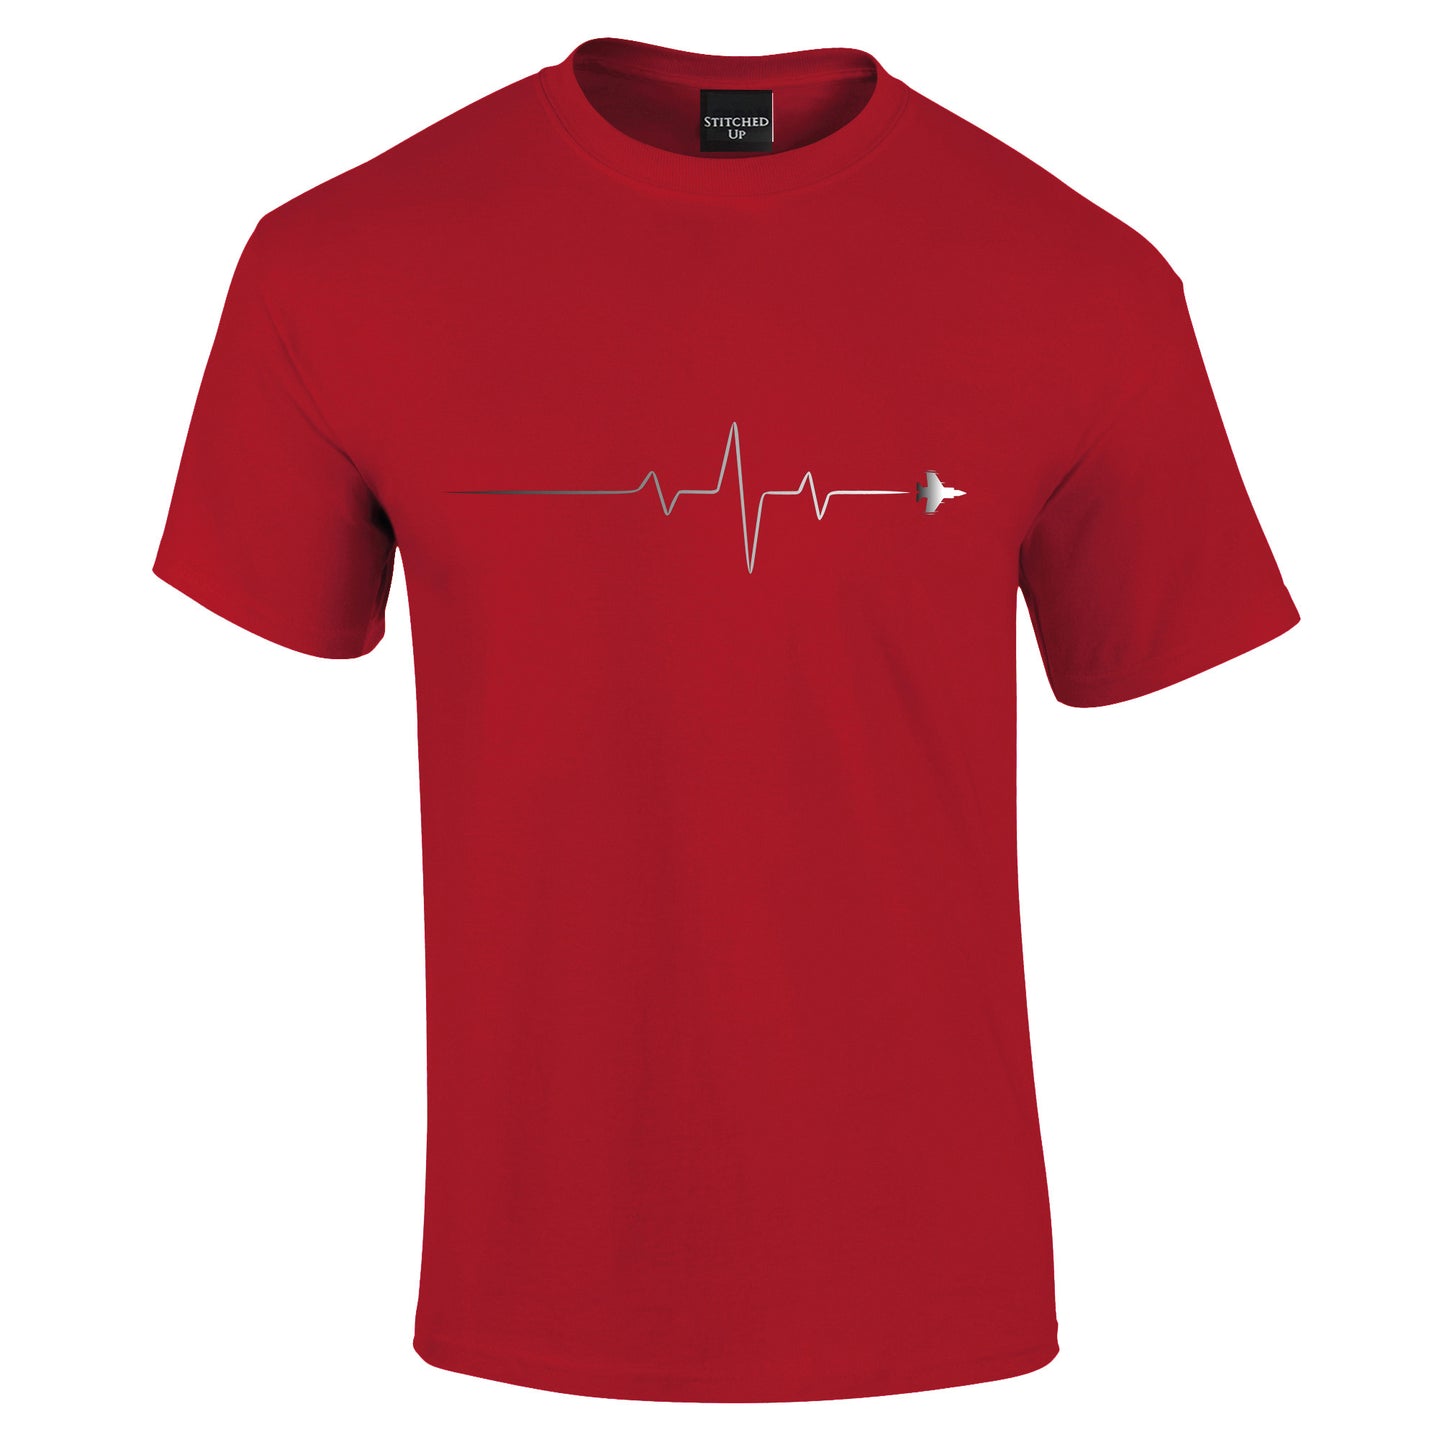 My Heartbeat Aviation T-Shirt